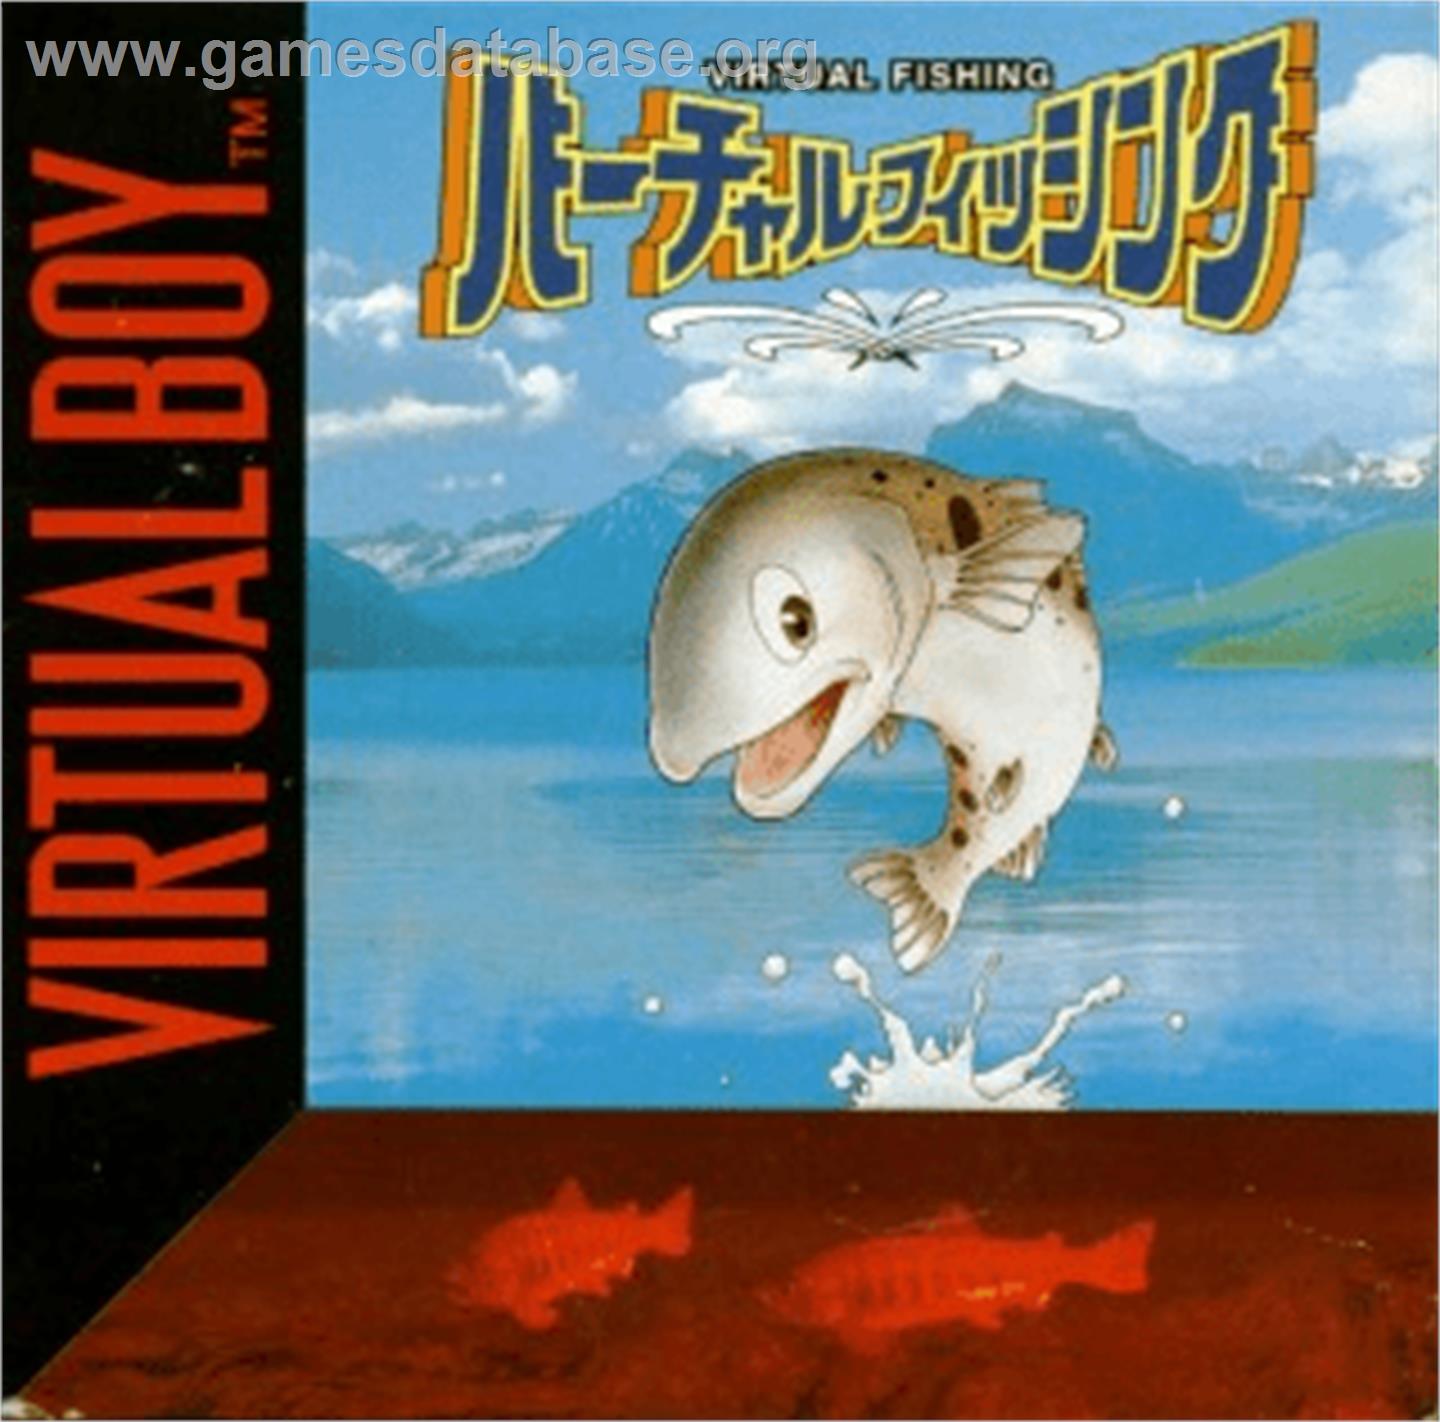 Virtual Fishing - Nintendo Virtual Boy - Artwork - Box